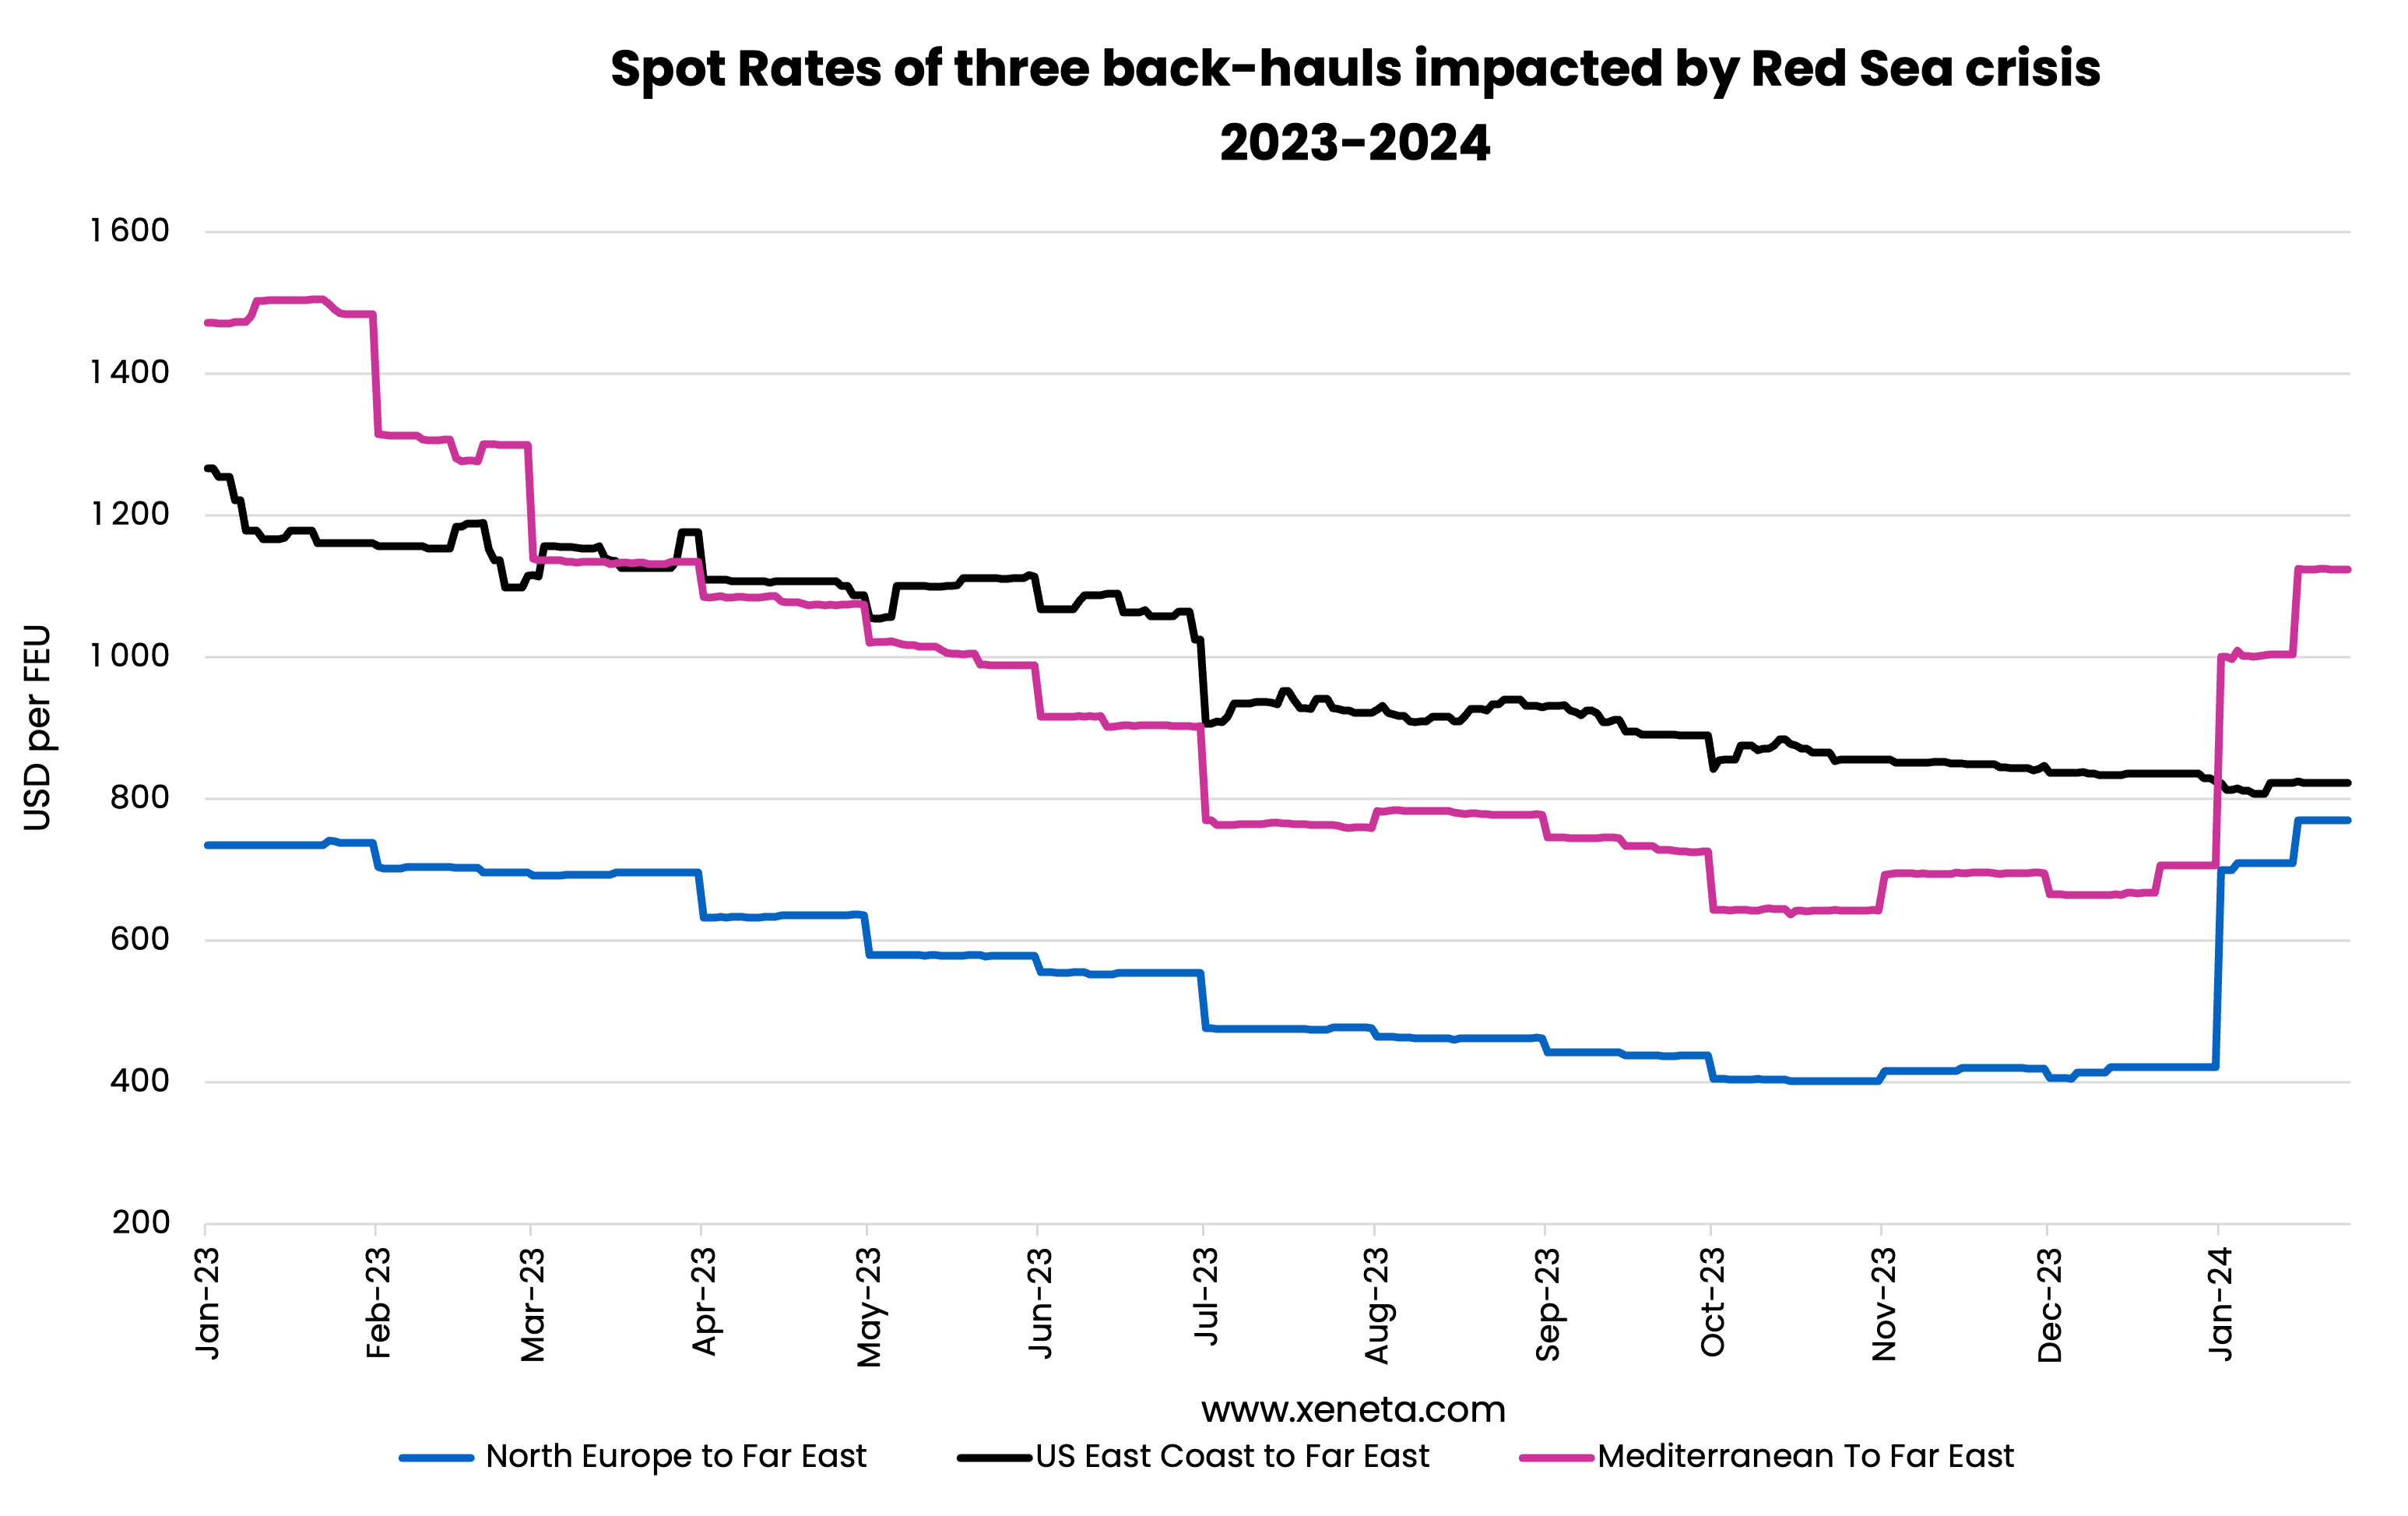 Ocean Spot Rates on Backhauls